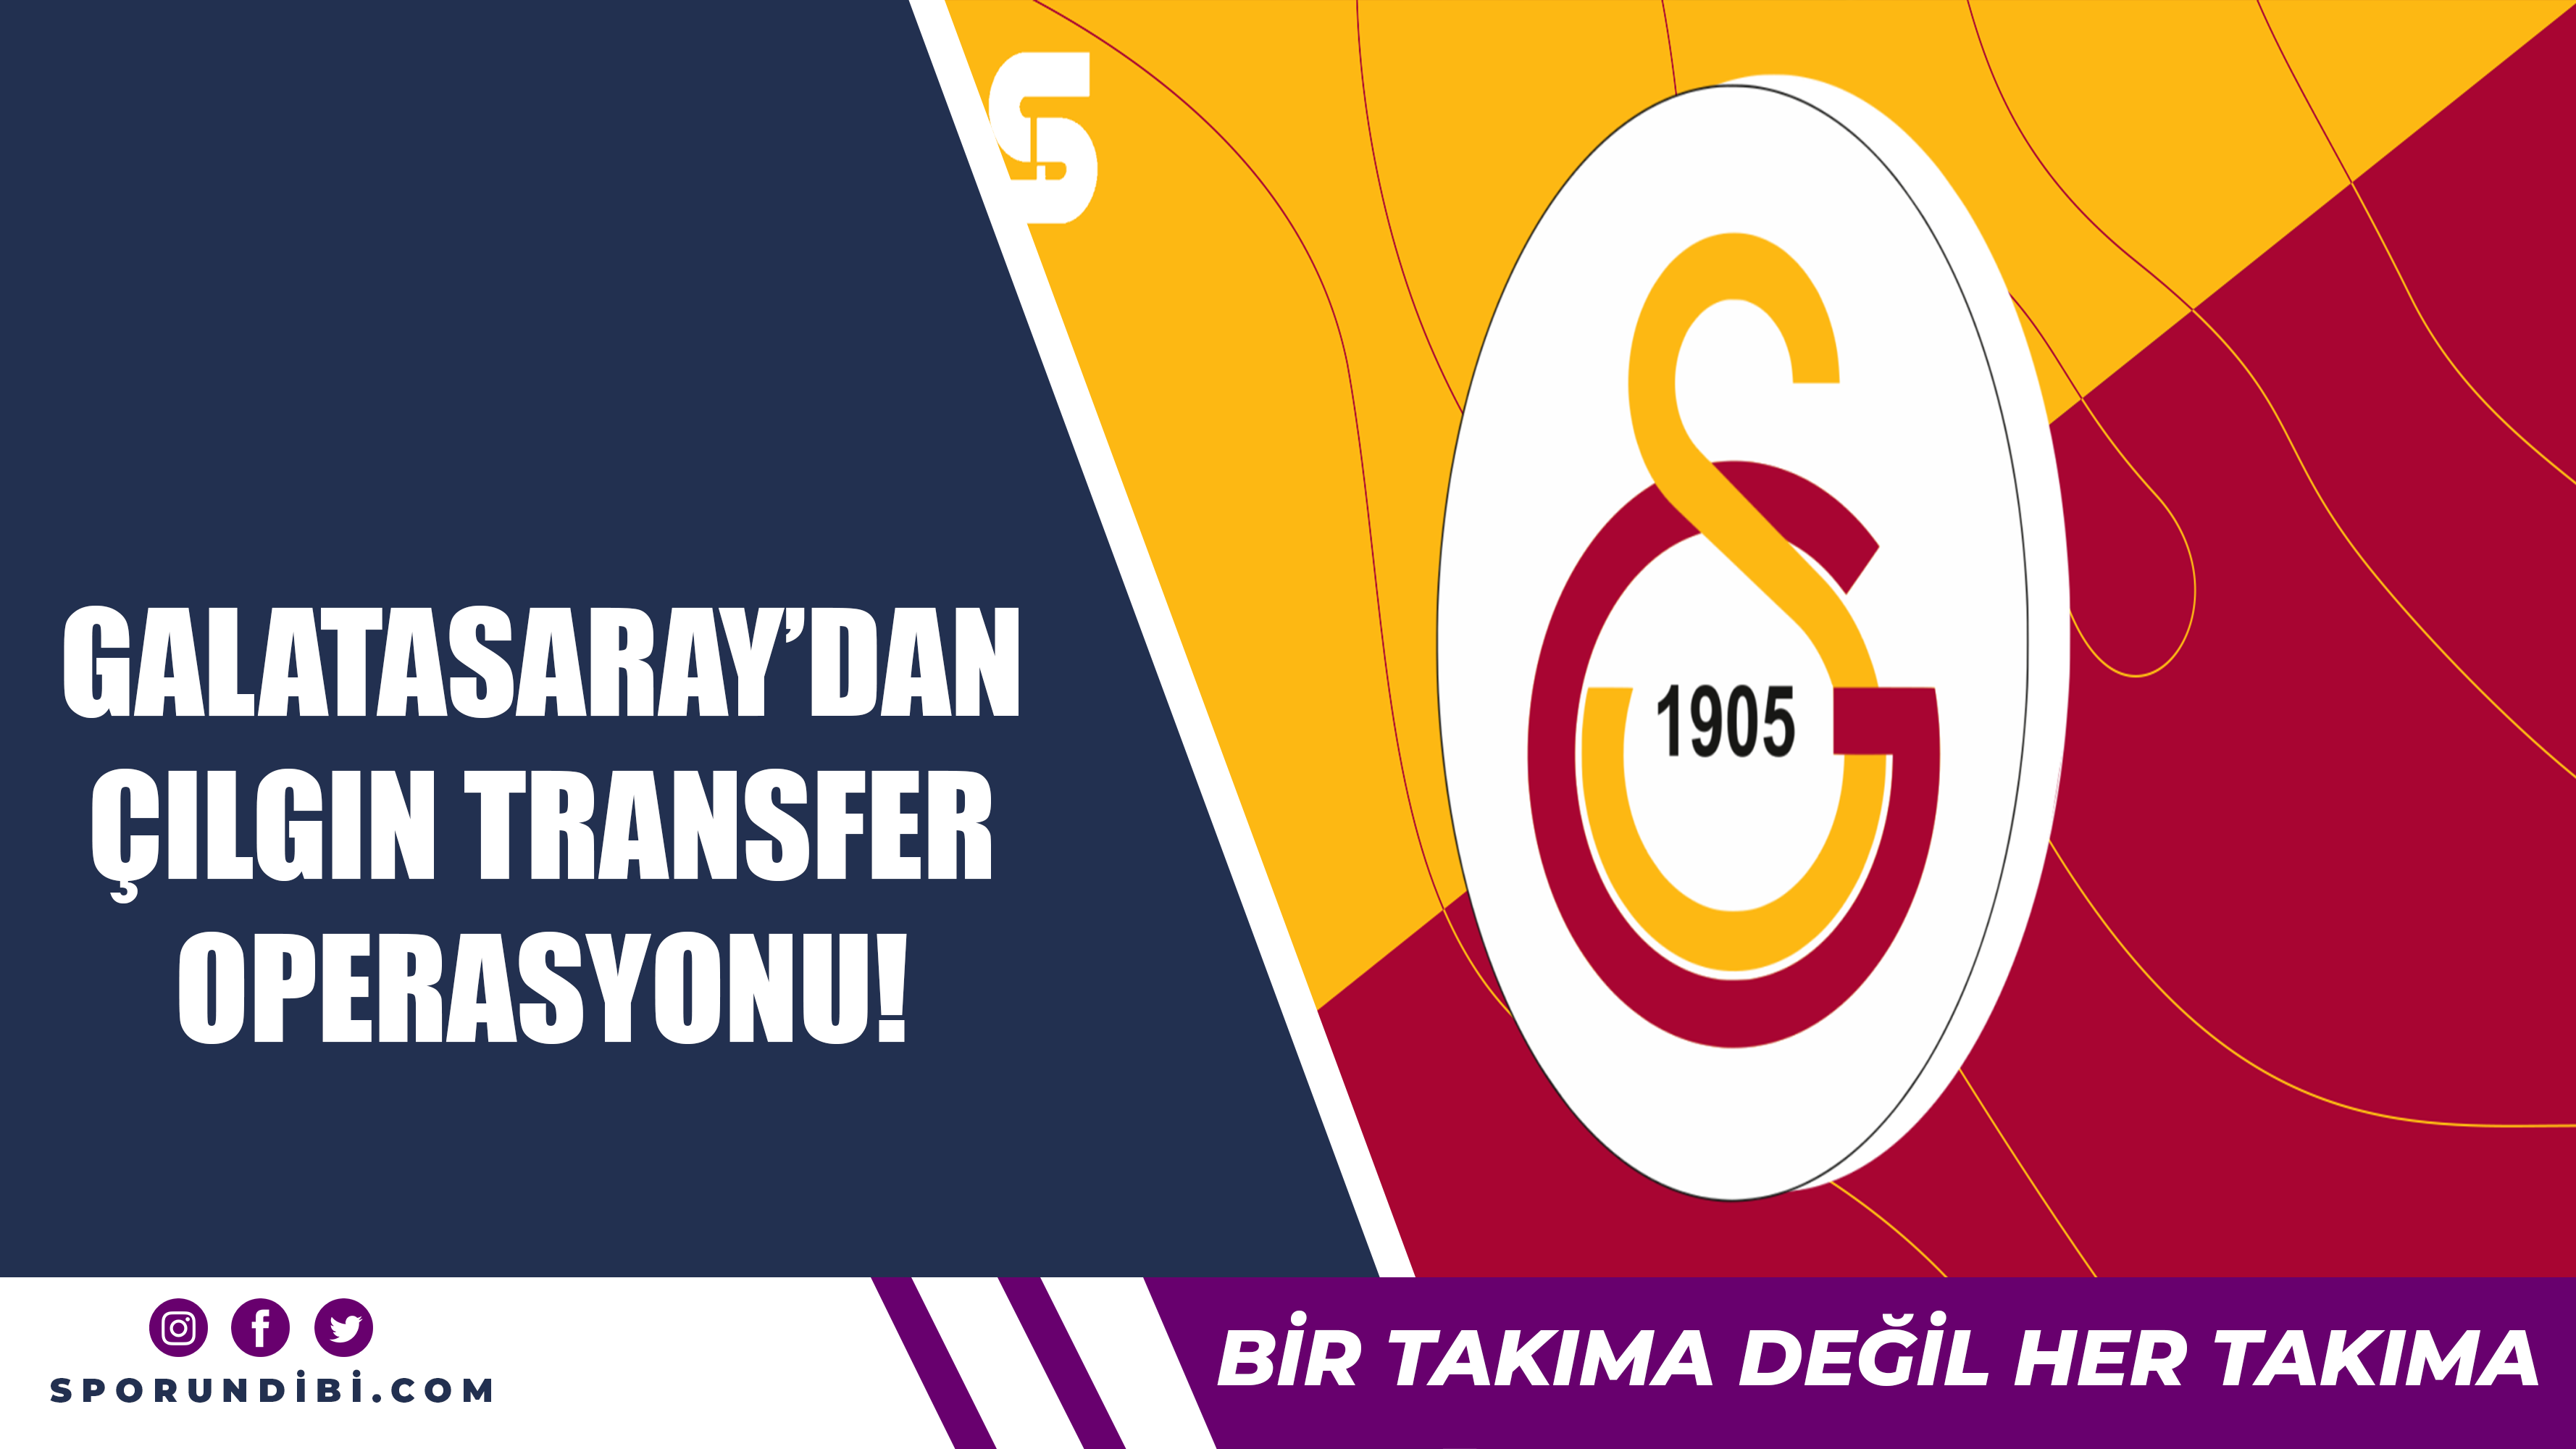 Galatasaray'dan çılgın transfer operasyonu!